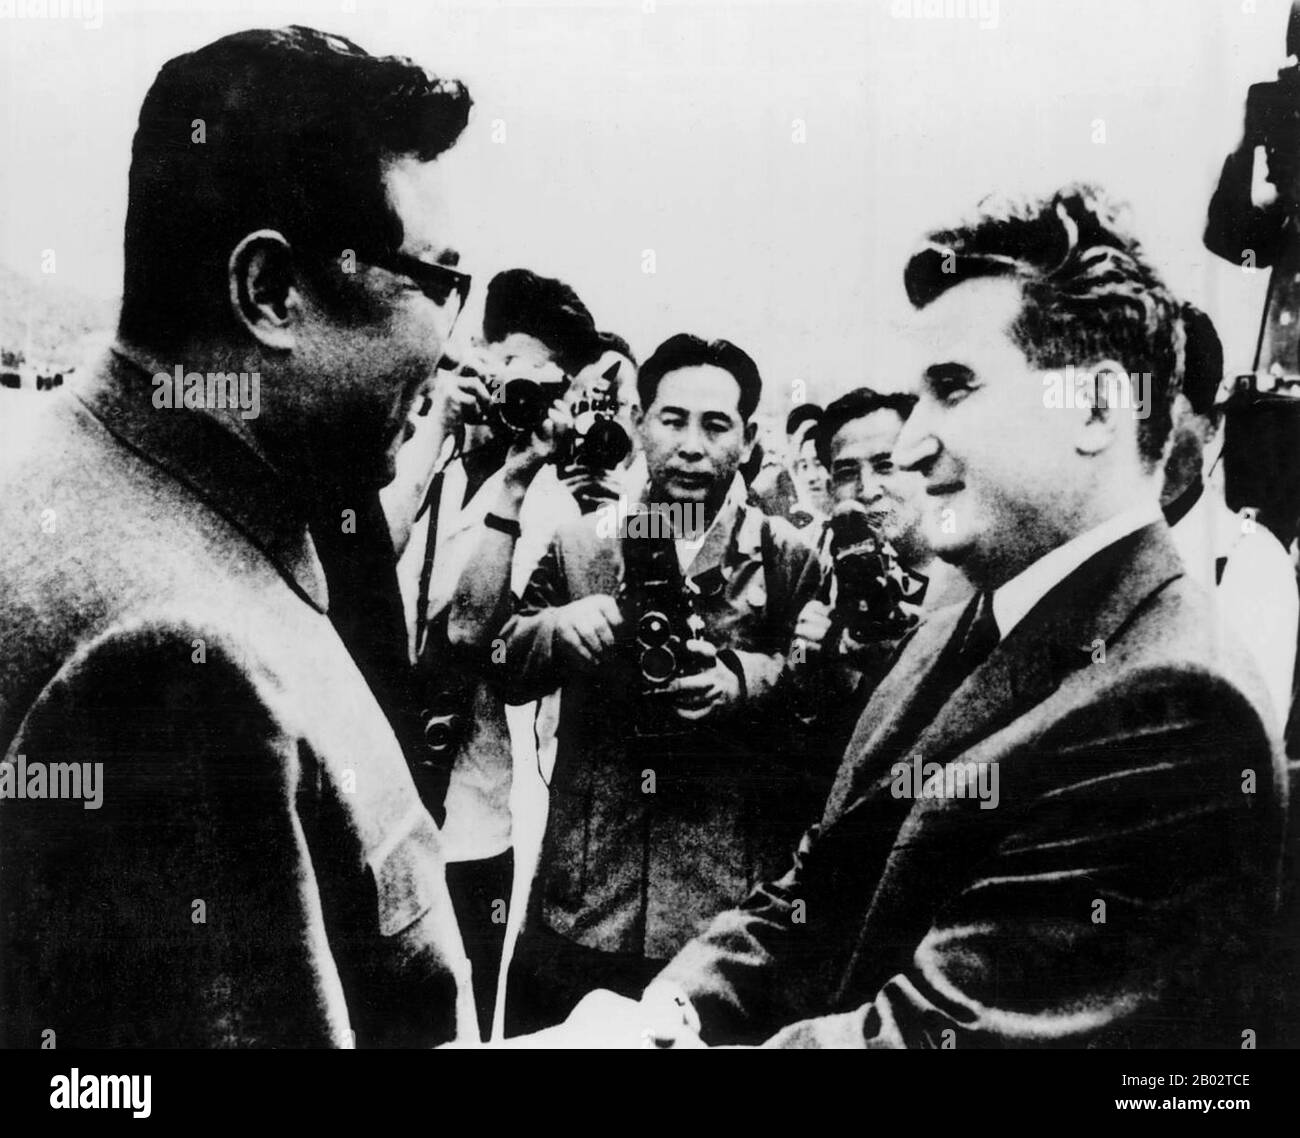 Nicolae Ceausescu (26 gennaio 1918 – 25 dicembre 1989) è stato un . Fu Segretario Generale del Partito Comunista Rumeno dal 1965 al 1989, e come tale fu il secondo e ultimo leader comunista del paese. Fu anche il capo di stato del paese dal 1967 al 1989. Ceausescu ha visitato la Cina, la Corea del Nord, la Repubblica Popolare mongola e il Vietnam del Nord nel 1971. Ha preso grande interesse per l'idea di una trasformazione nazionale totale come incarnato nei programmi della Juche della Corea del Nord e della Rivoluzione culturale cinese. Fu anche ispirato dai culti della personalità del Kore settentrionale Foto Stock